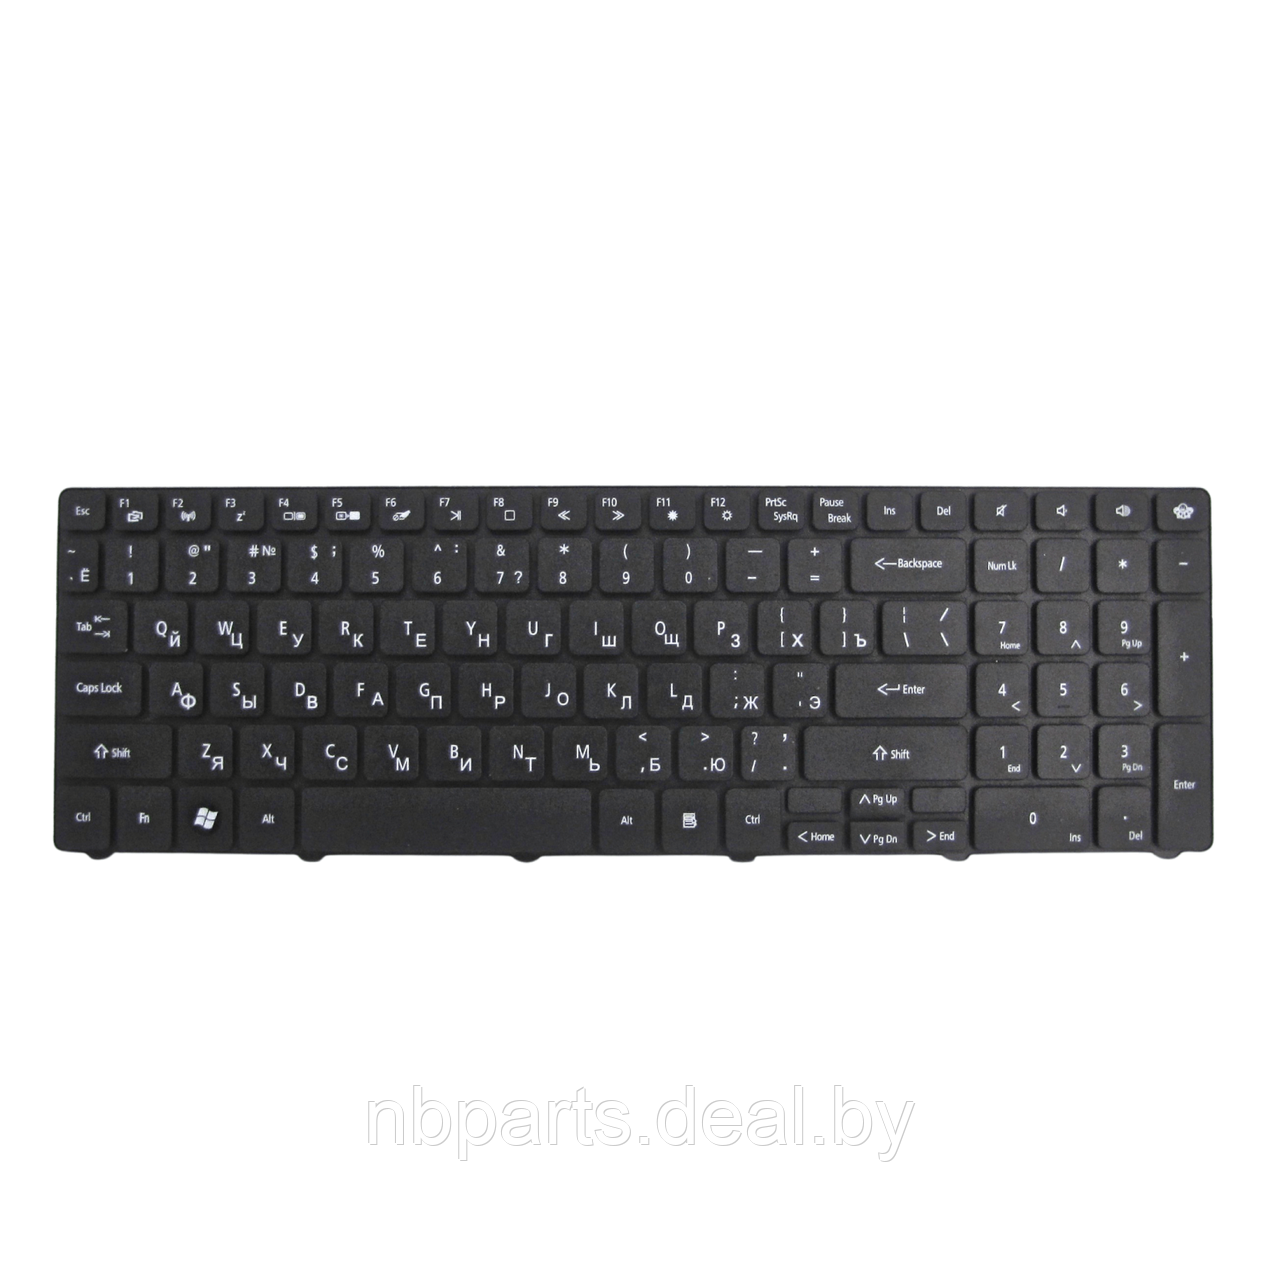 Клавиатура для ноутбука Packard Bell EasyNote TM85 TE11 LE11, чёрная, RU